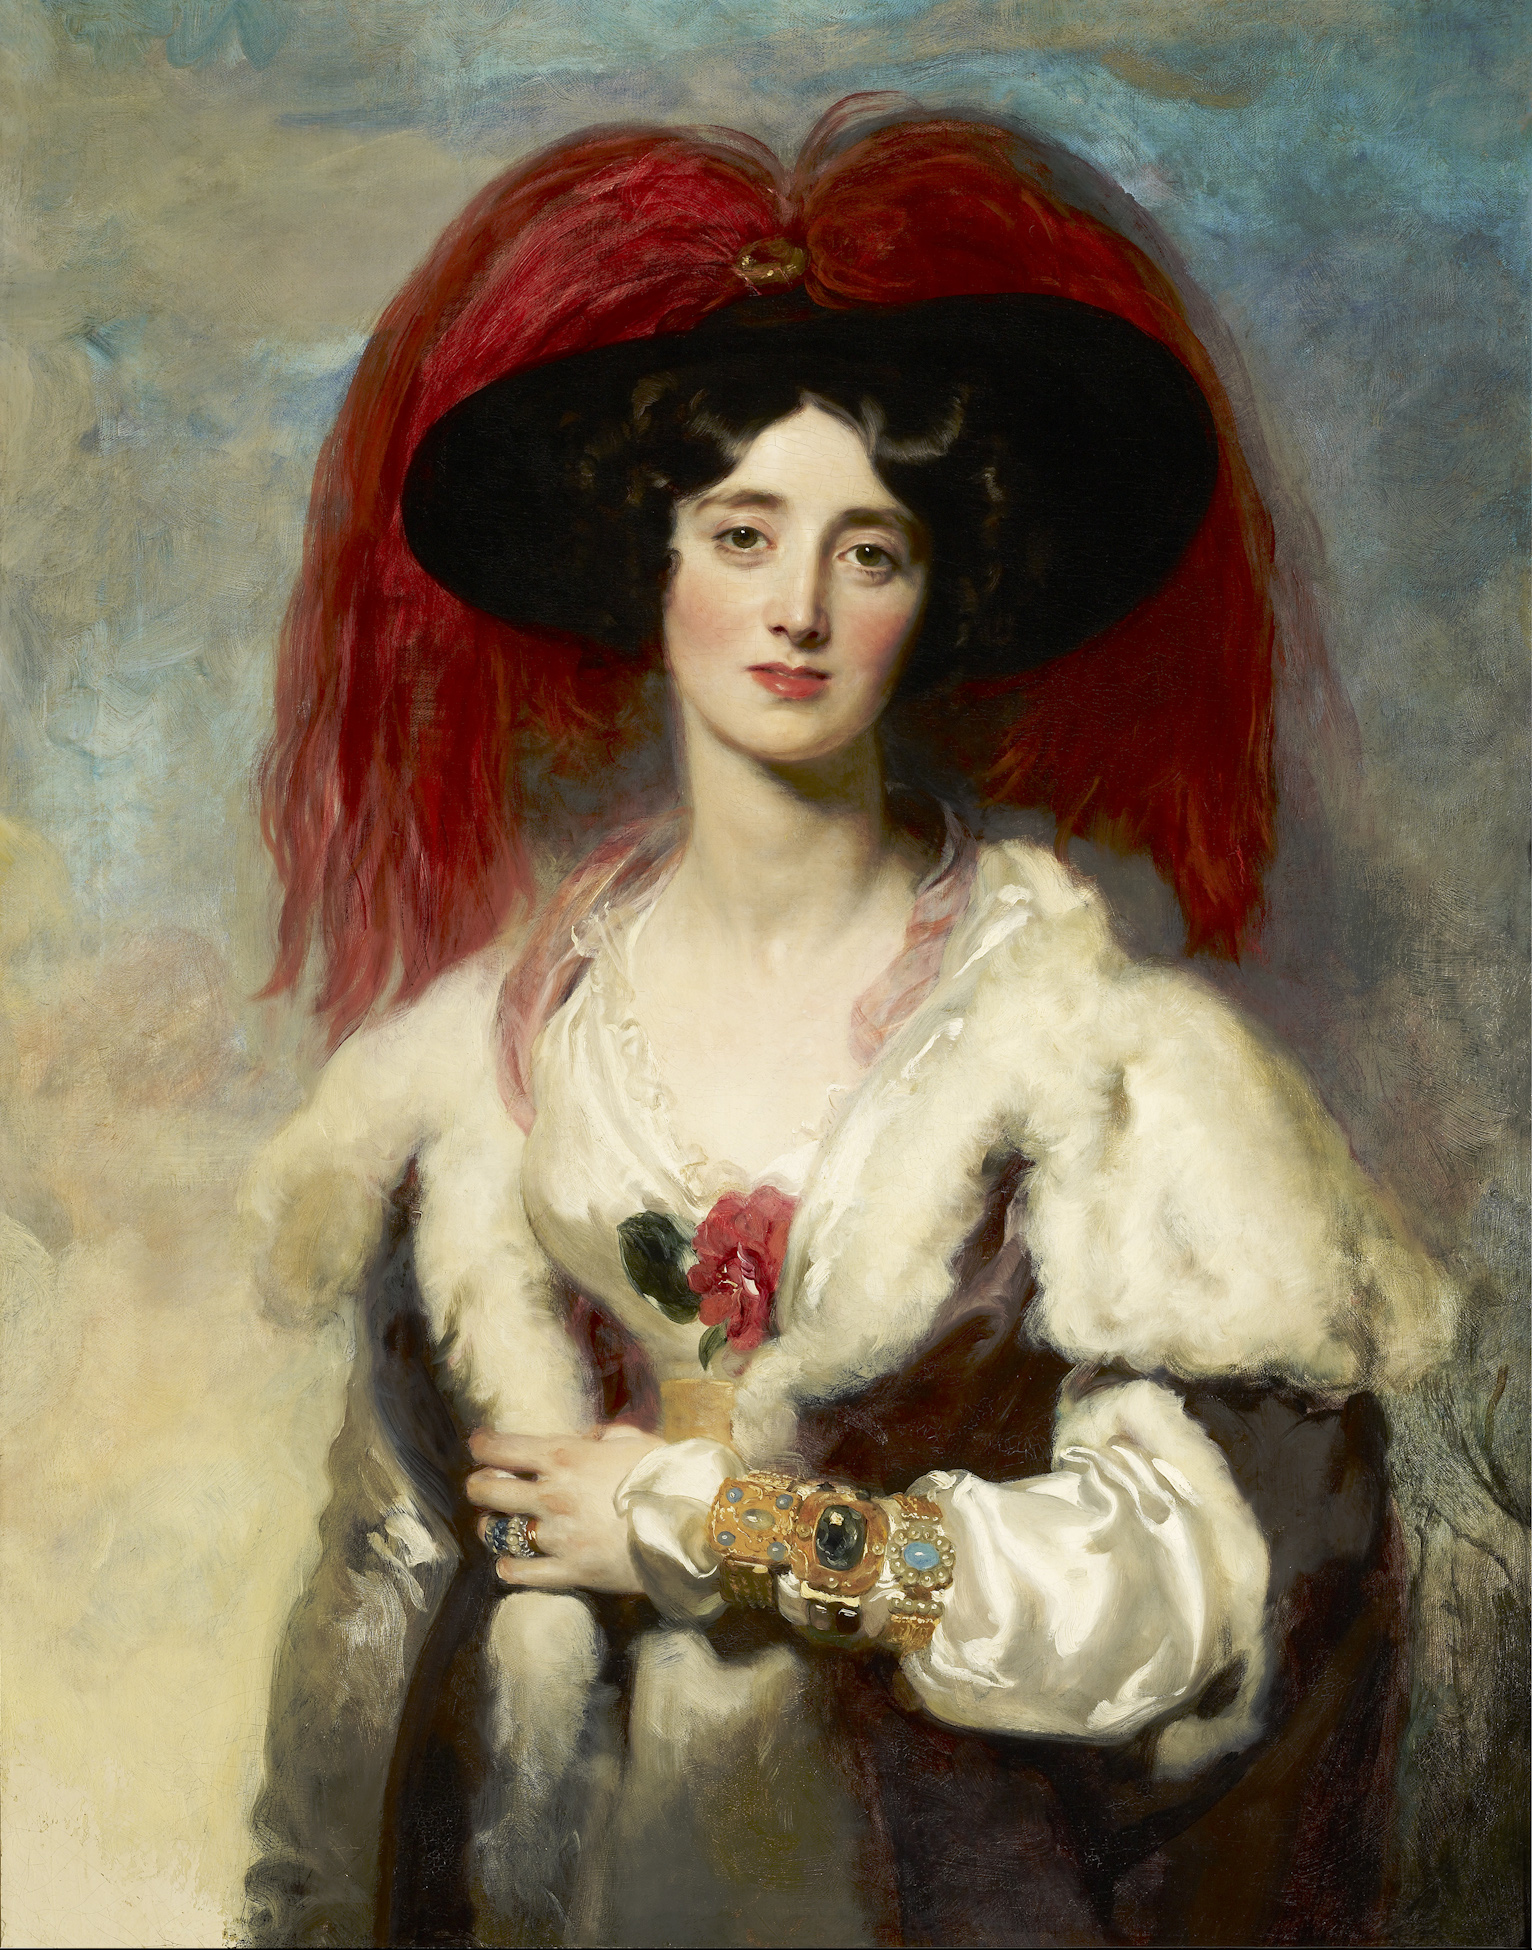 Julia, Lady Peel by Thomas Lawrence - 1827 - 90.8 x 70.8 cm La Colección Frick